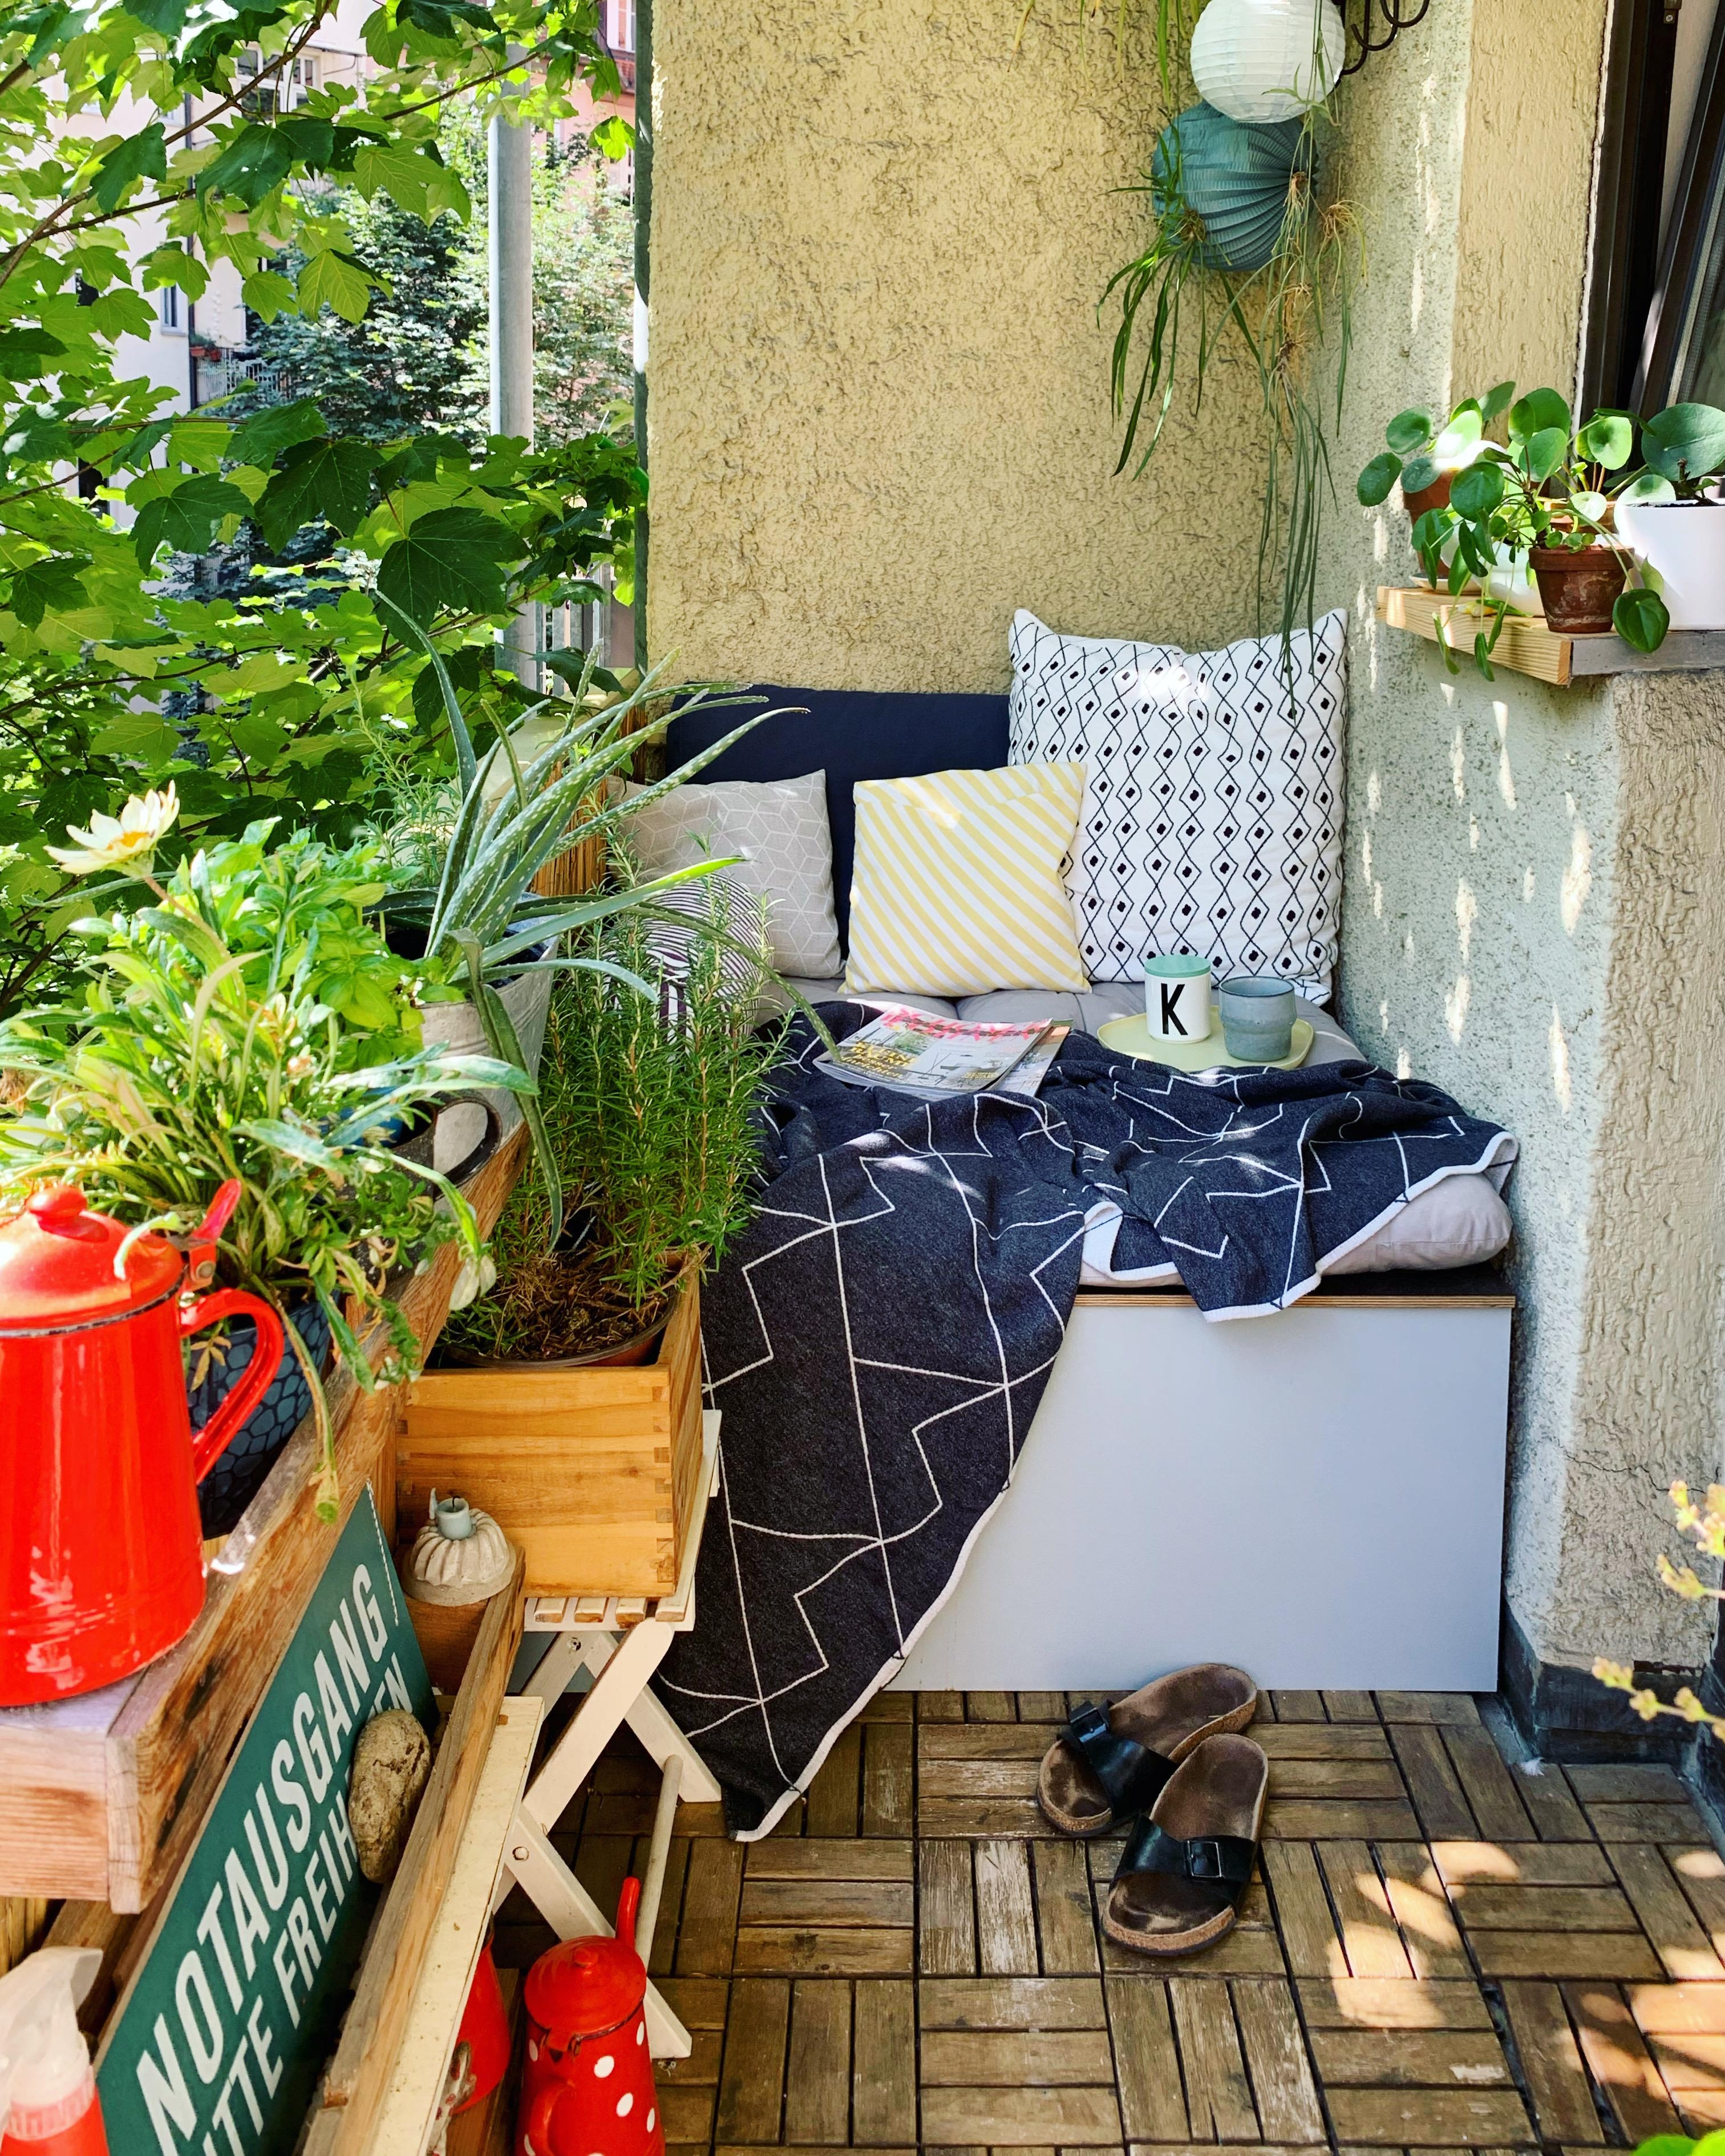 Mein persönlicher Sommer Hotspot 😎☀️
#balkon #sommer #podest #lovelounge #selbstgebaut #diy #pflanzen #couchliebt